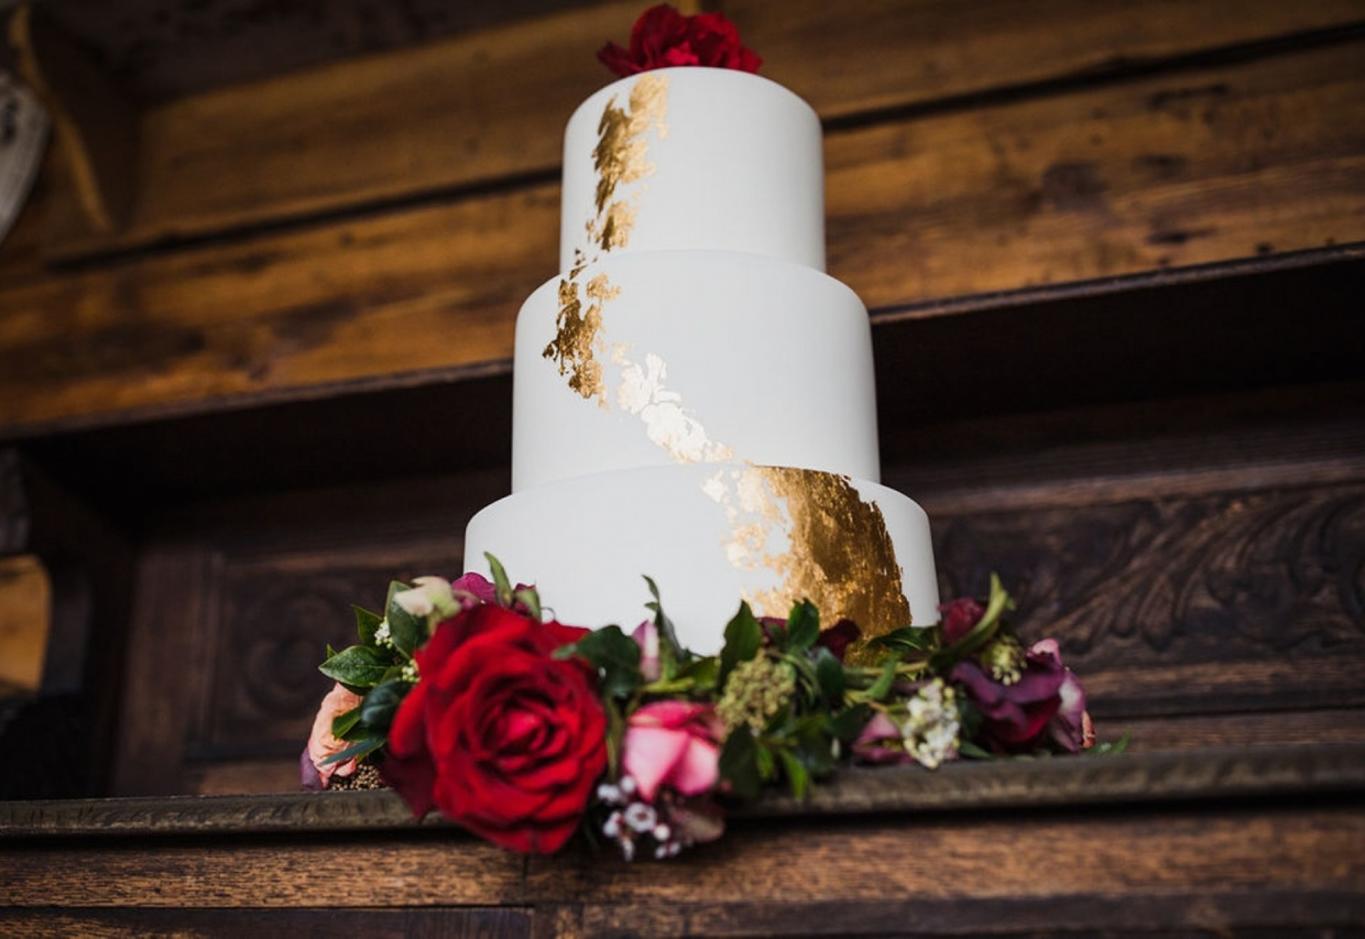 gold leaf design and floral decorations wedding cake